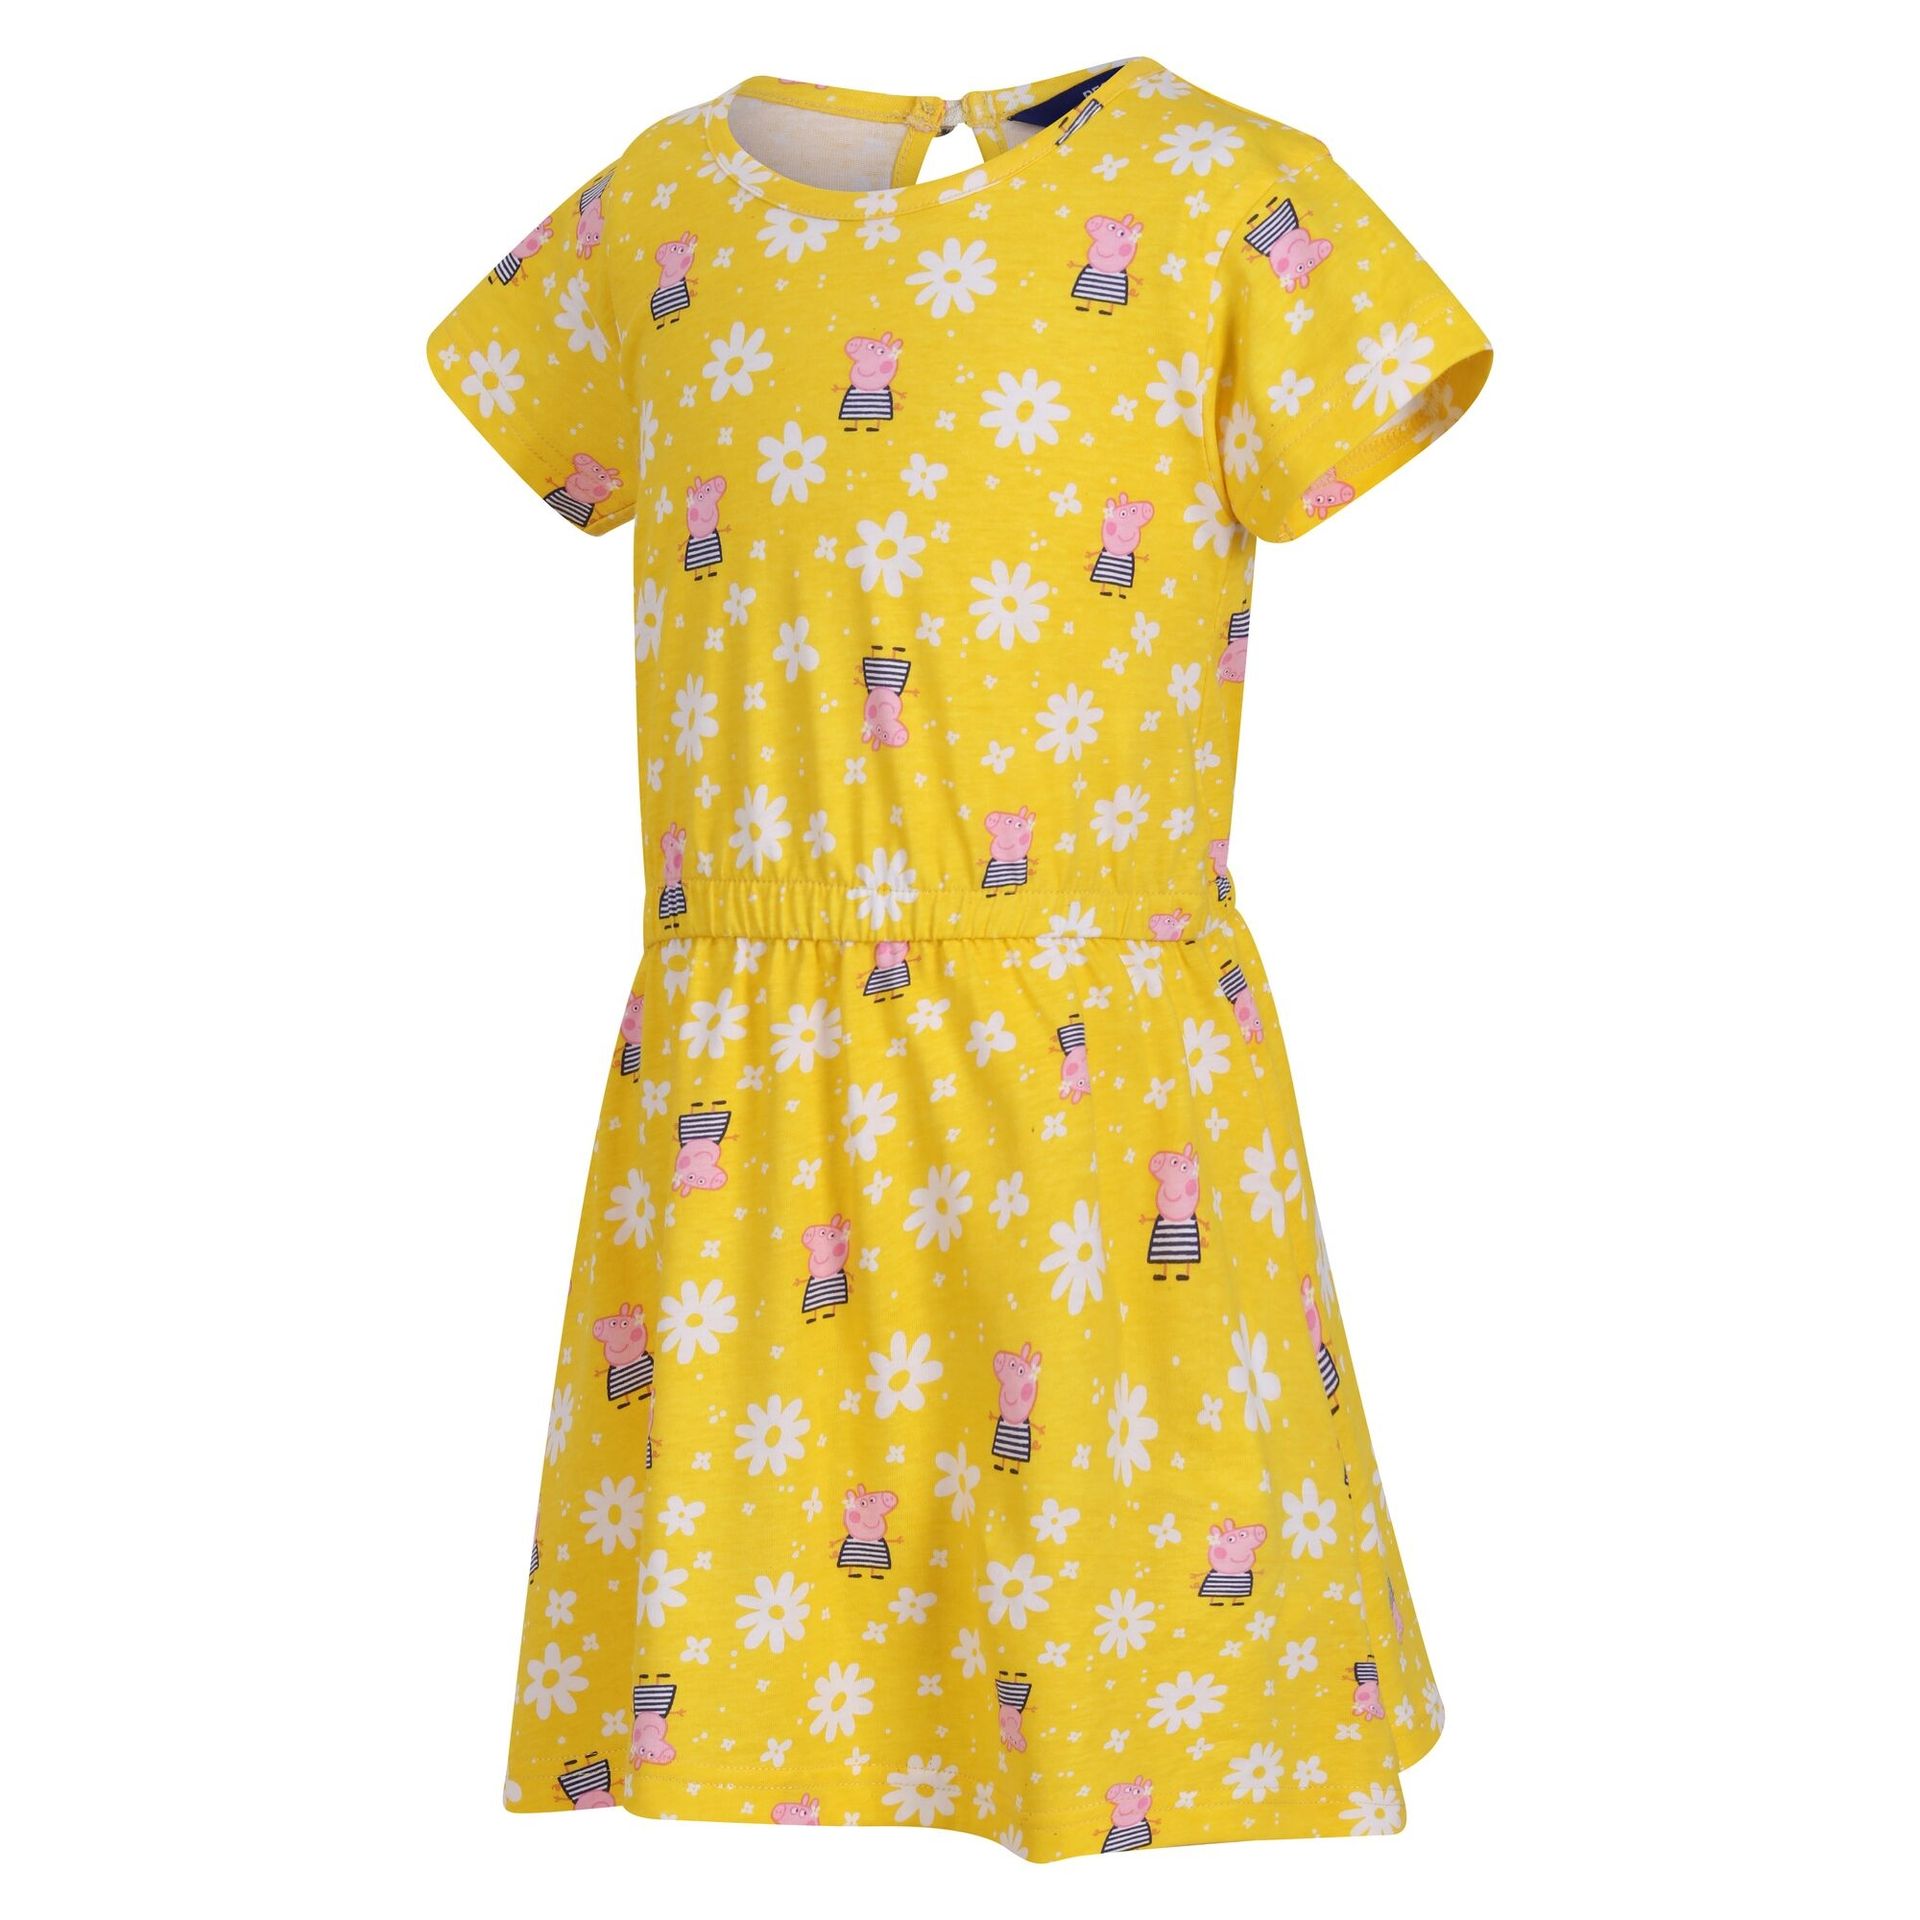 Regatta Dziecięca Sukienka Peppa Żółty, Rozmiar: 3-4 Lata